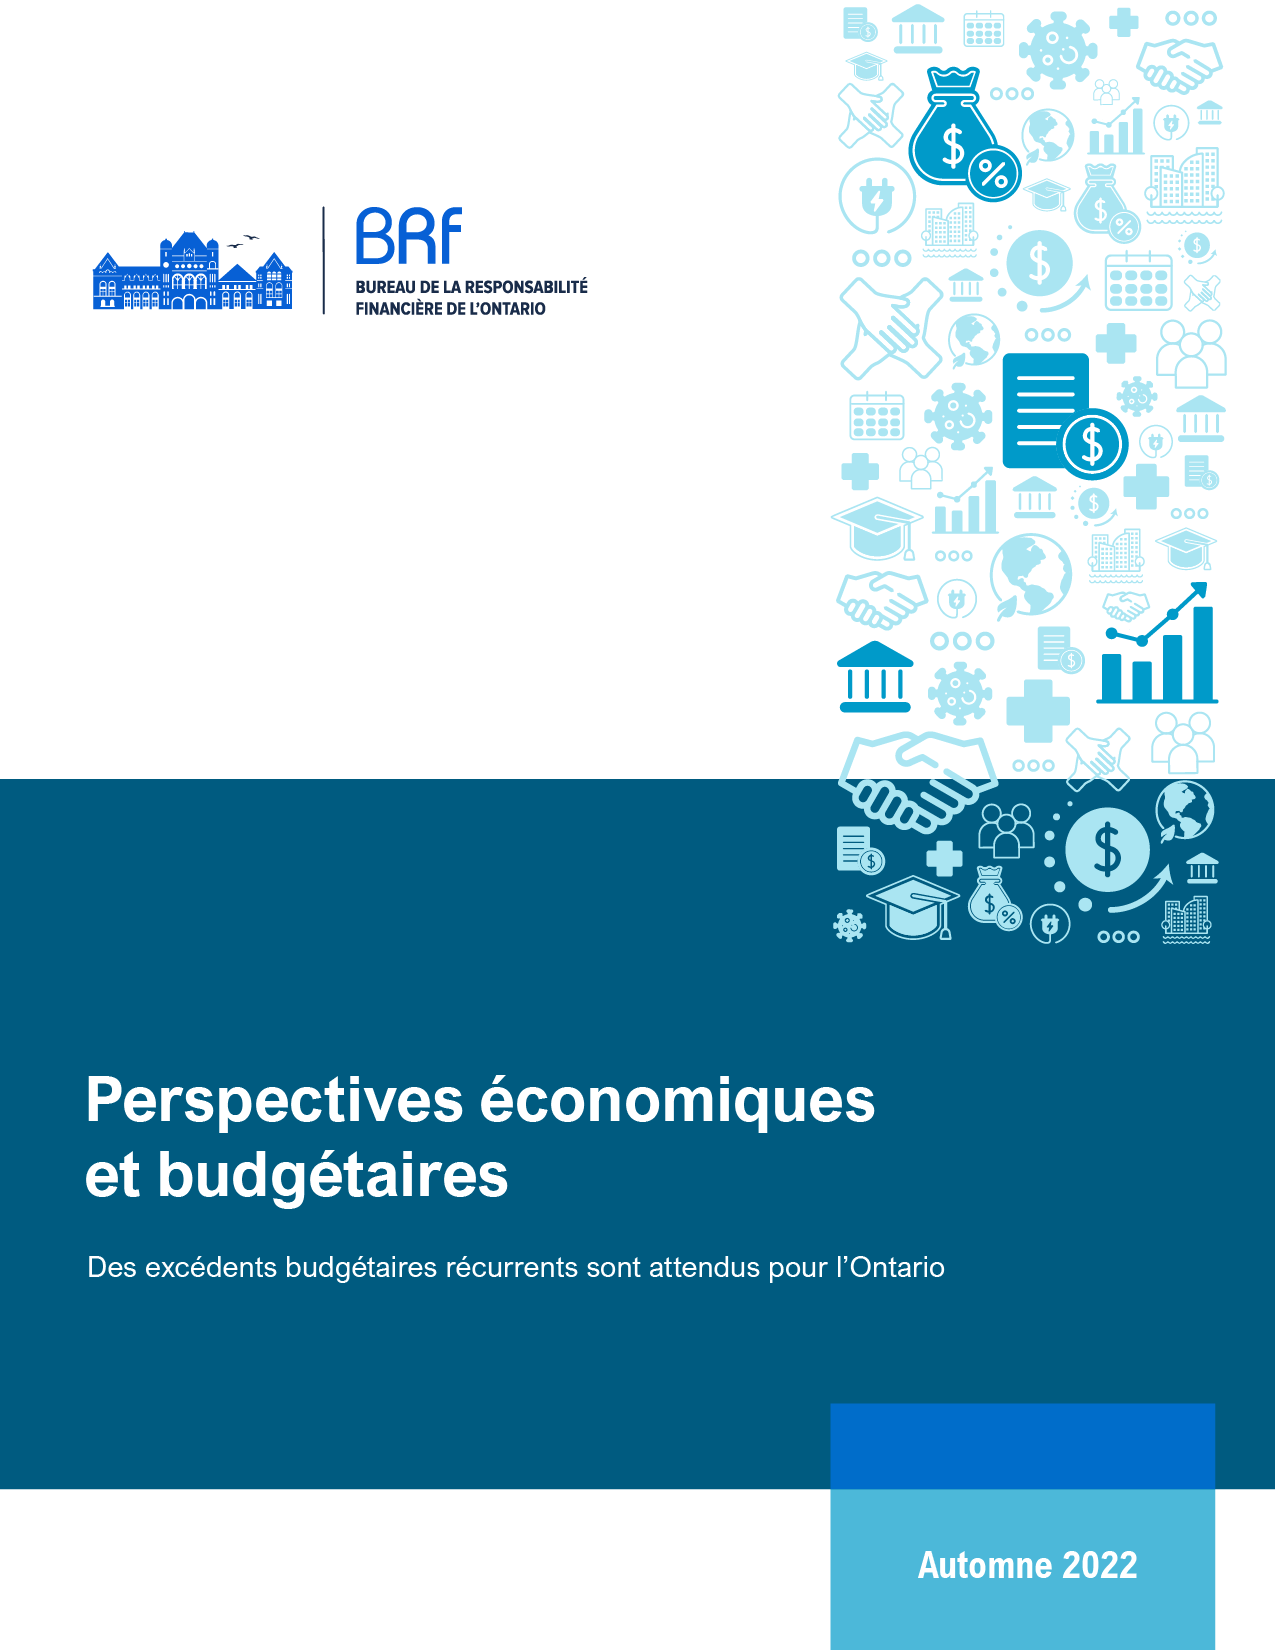 Perspectives économiques et budgétaires, autumne 2022